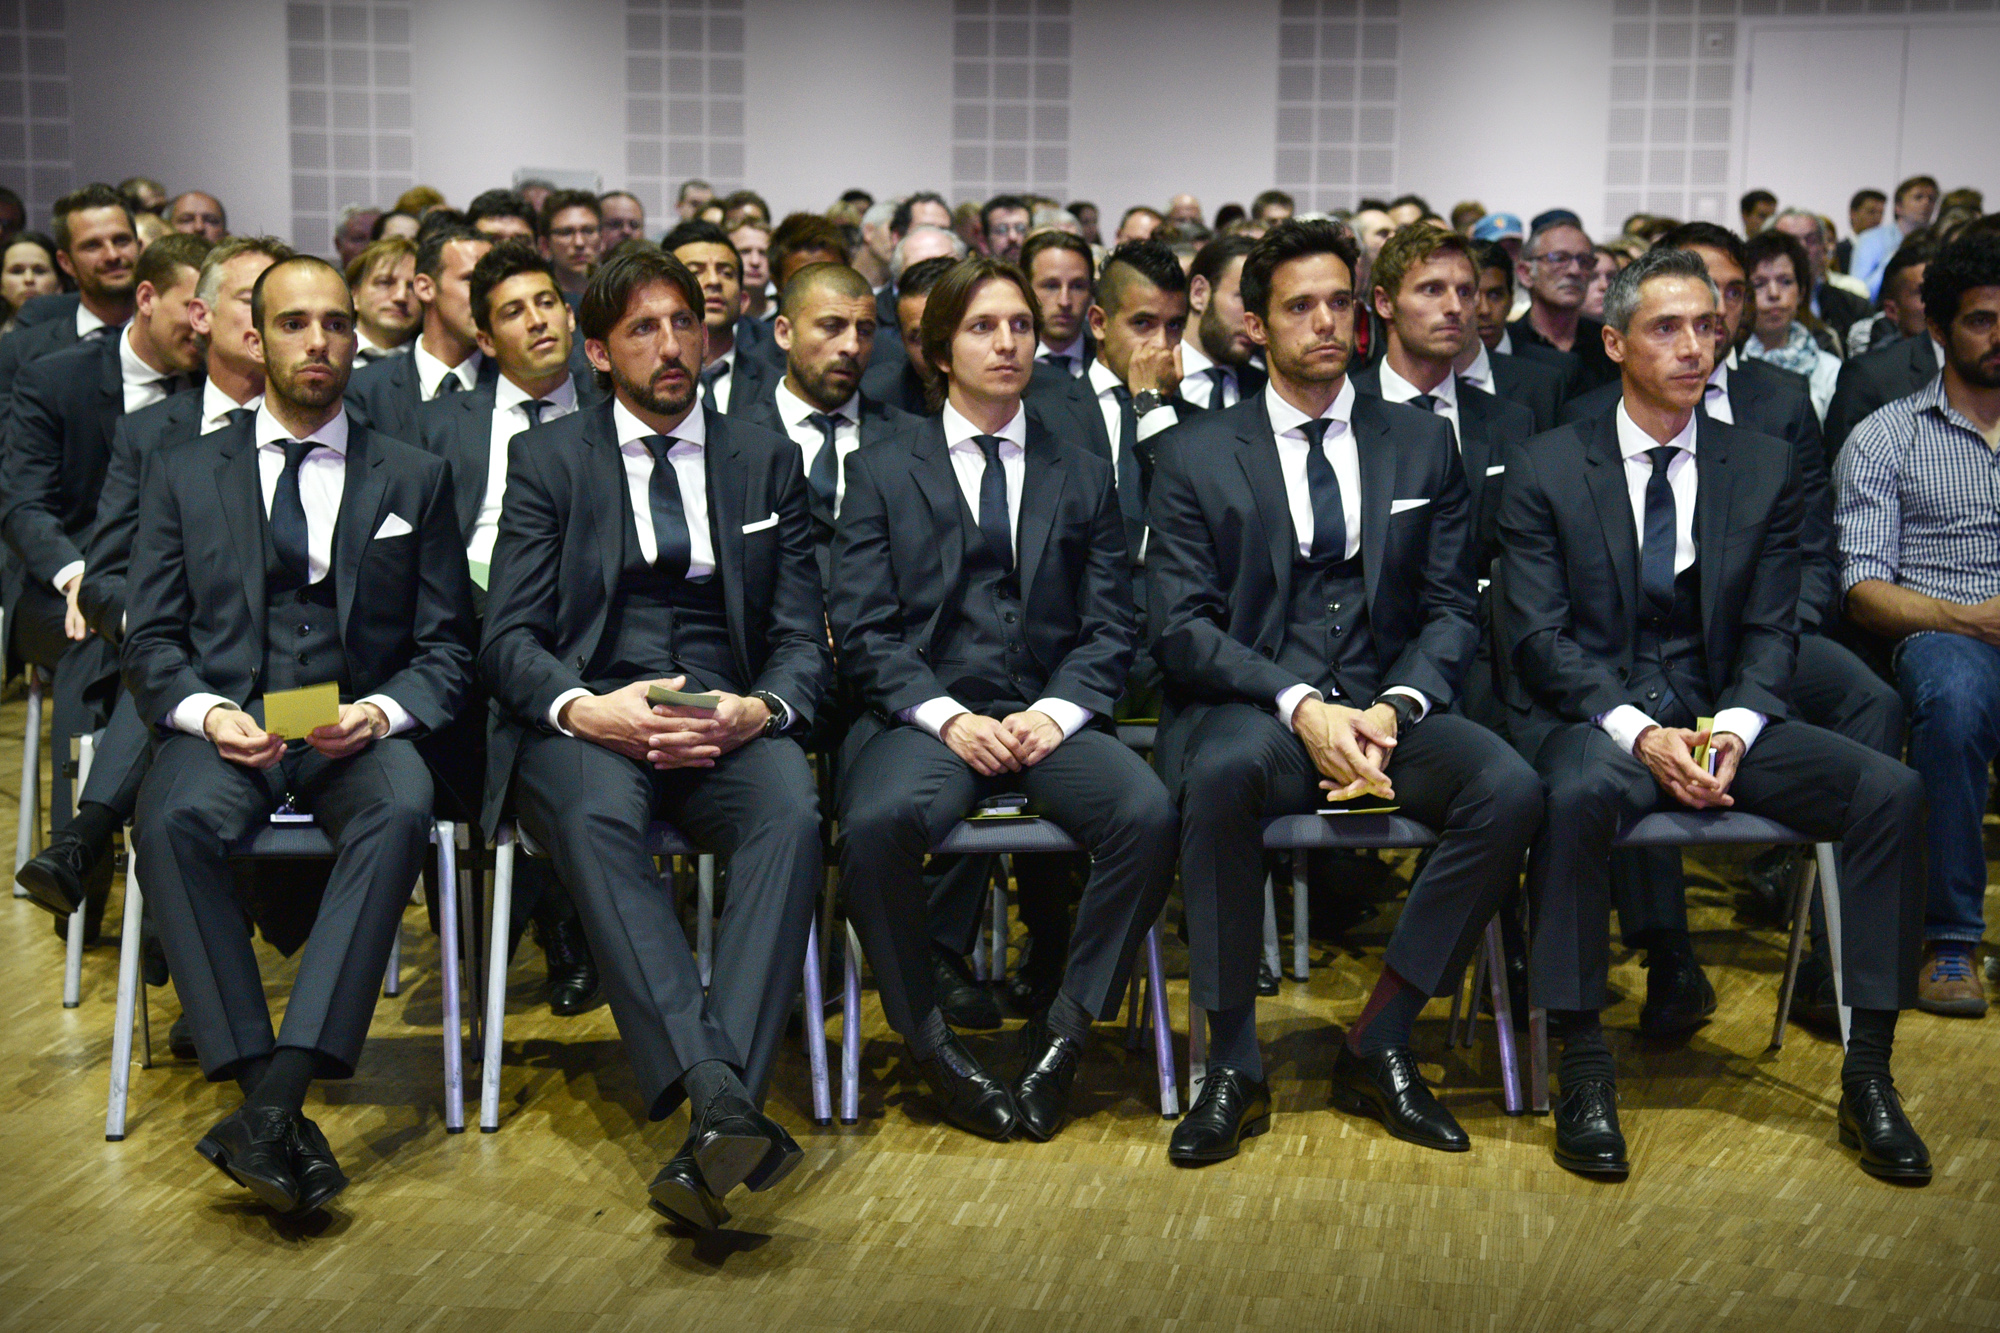 Die erste Mannschaft mit Trainer Paulo Sousa (vorne rechts). 121. Generalversammlung des FC Basel am 27. April 2015 im Congress Center Basel.